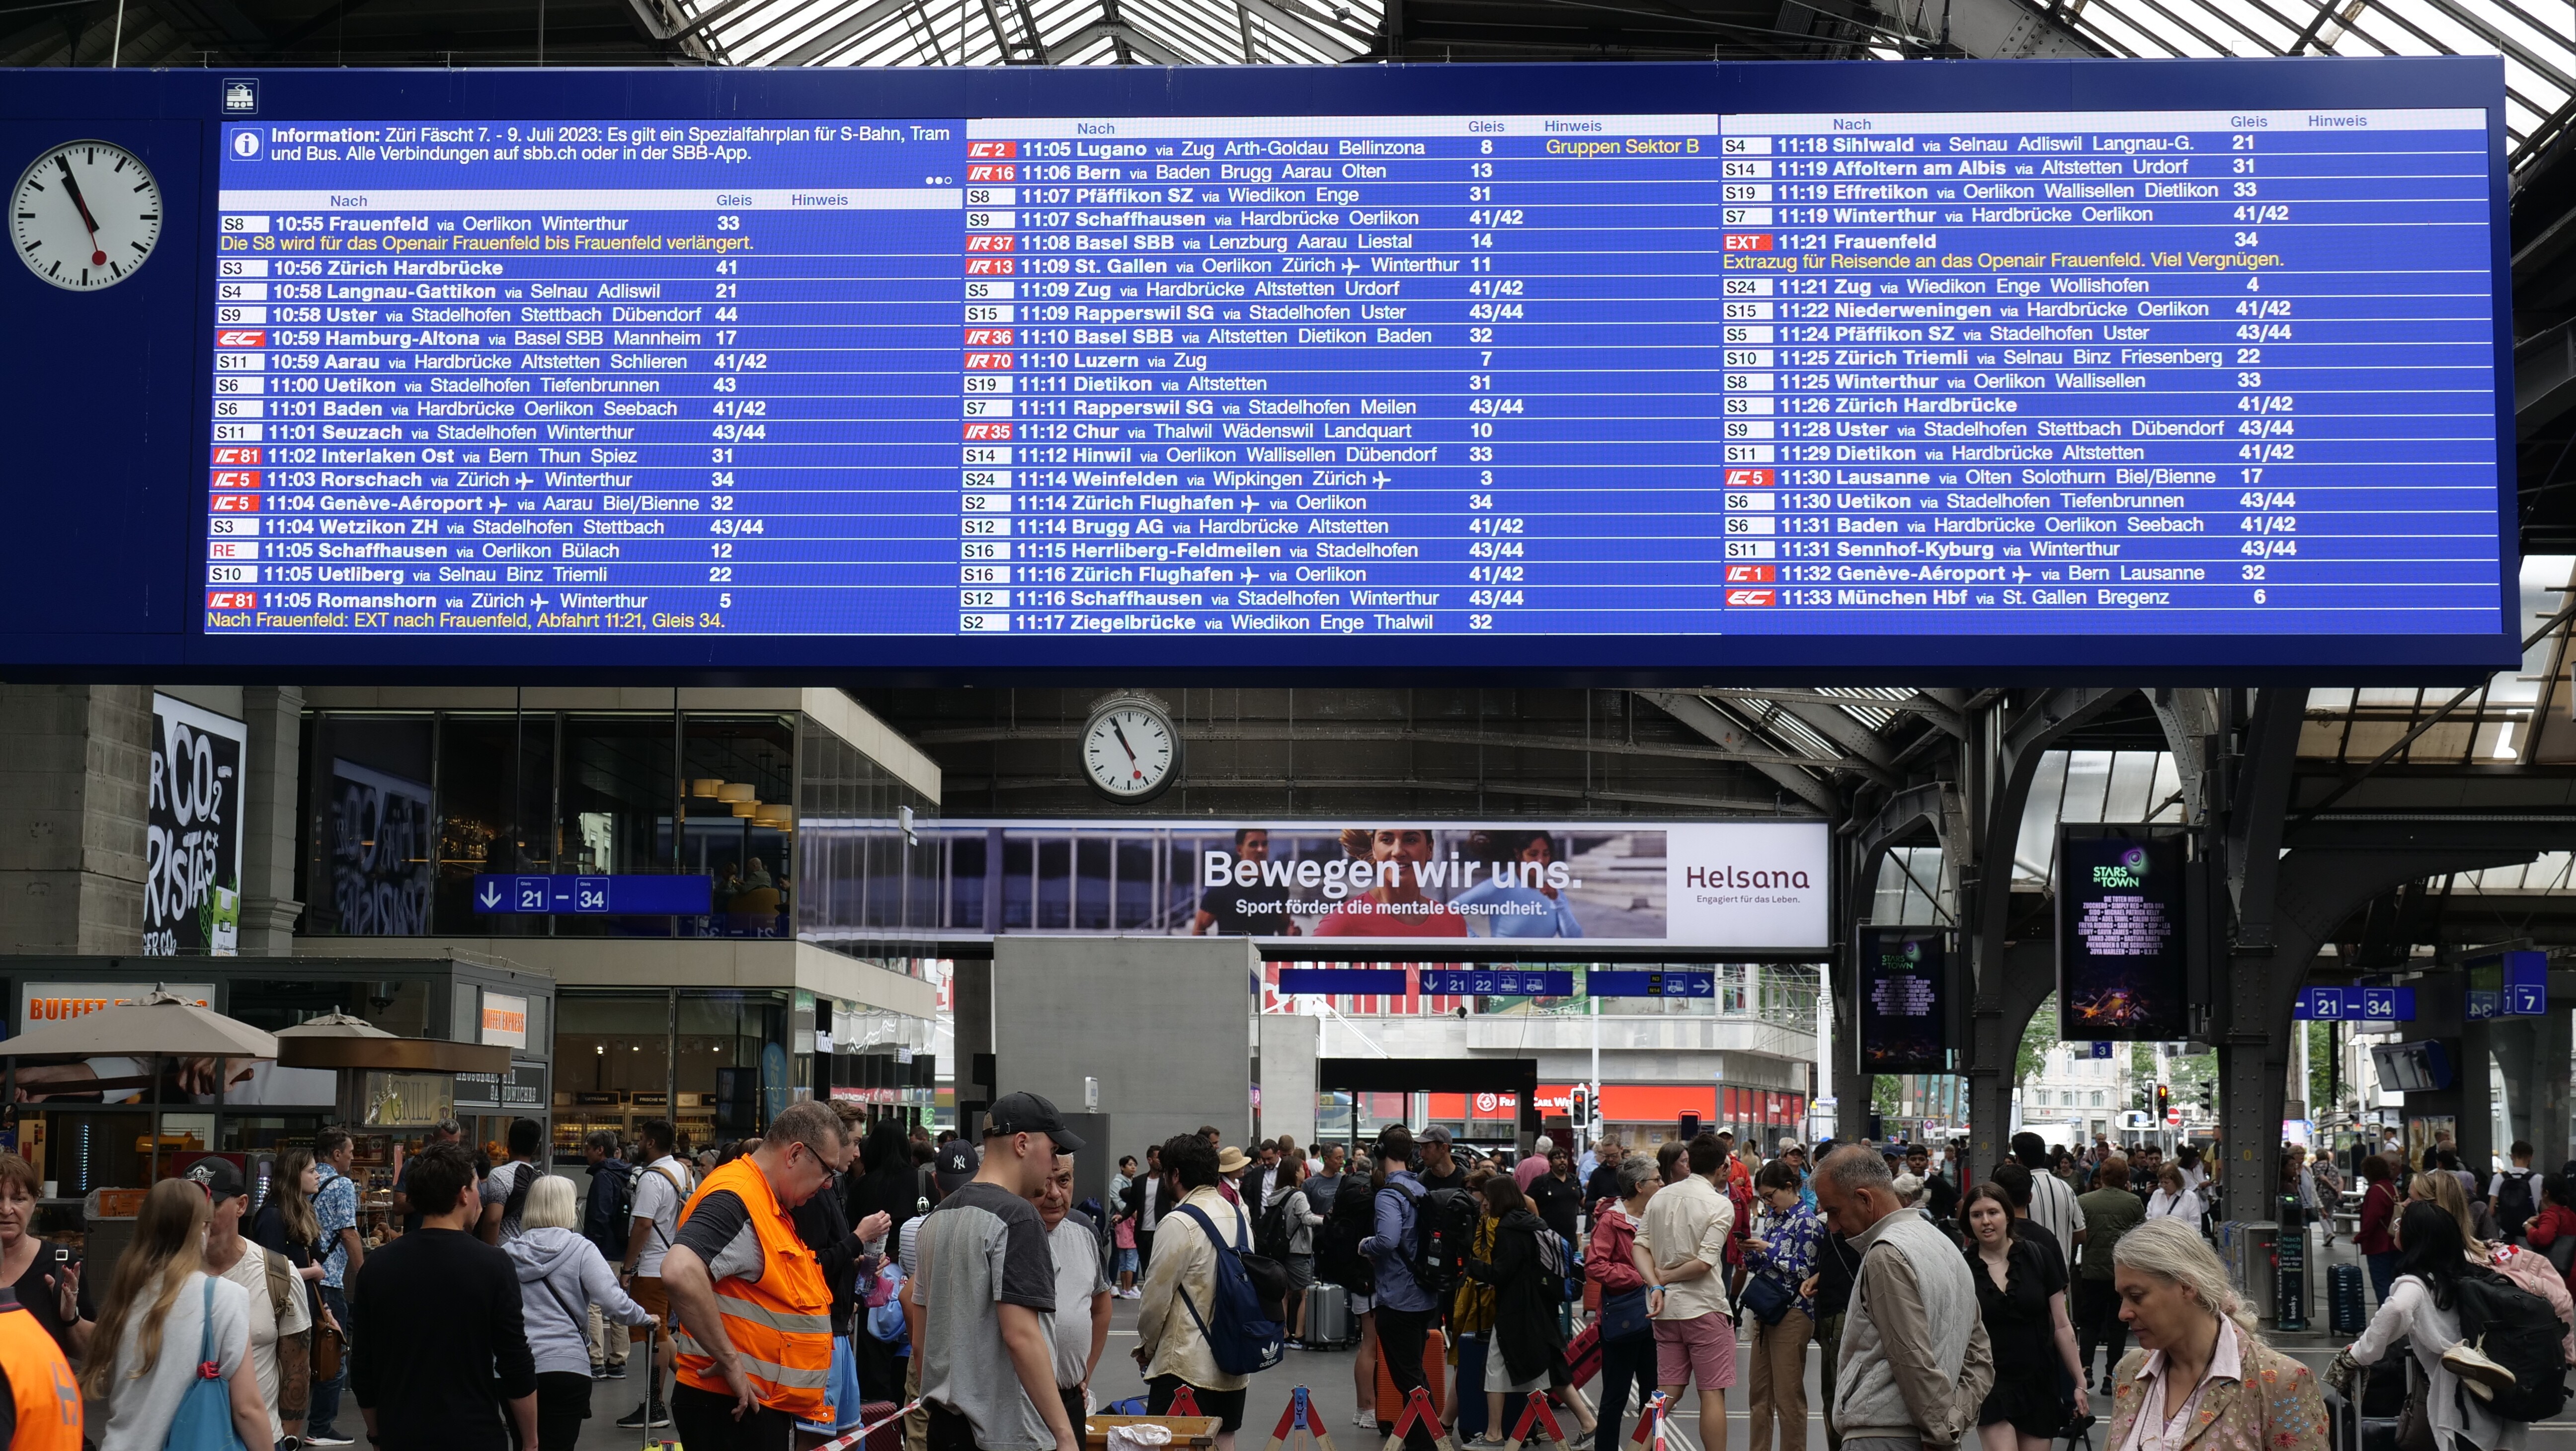 L’indicateur général de la gare centrale de Zurich avec une barre grise au-dessus du tableau des départs  et les prochaines correspondances triées par heure de départ, pour lesquelles la gare terminale est toujours affichée en premier, suivie des arrêts intermédiaires. En haut à gauche s'affichent les informations relatives à un événement actuel.